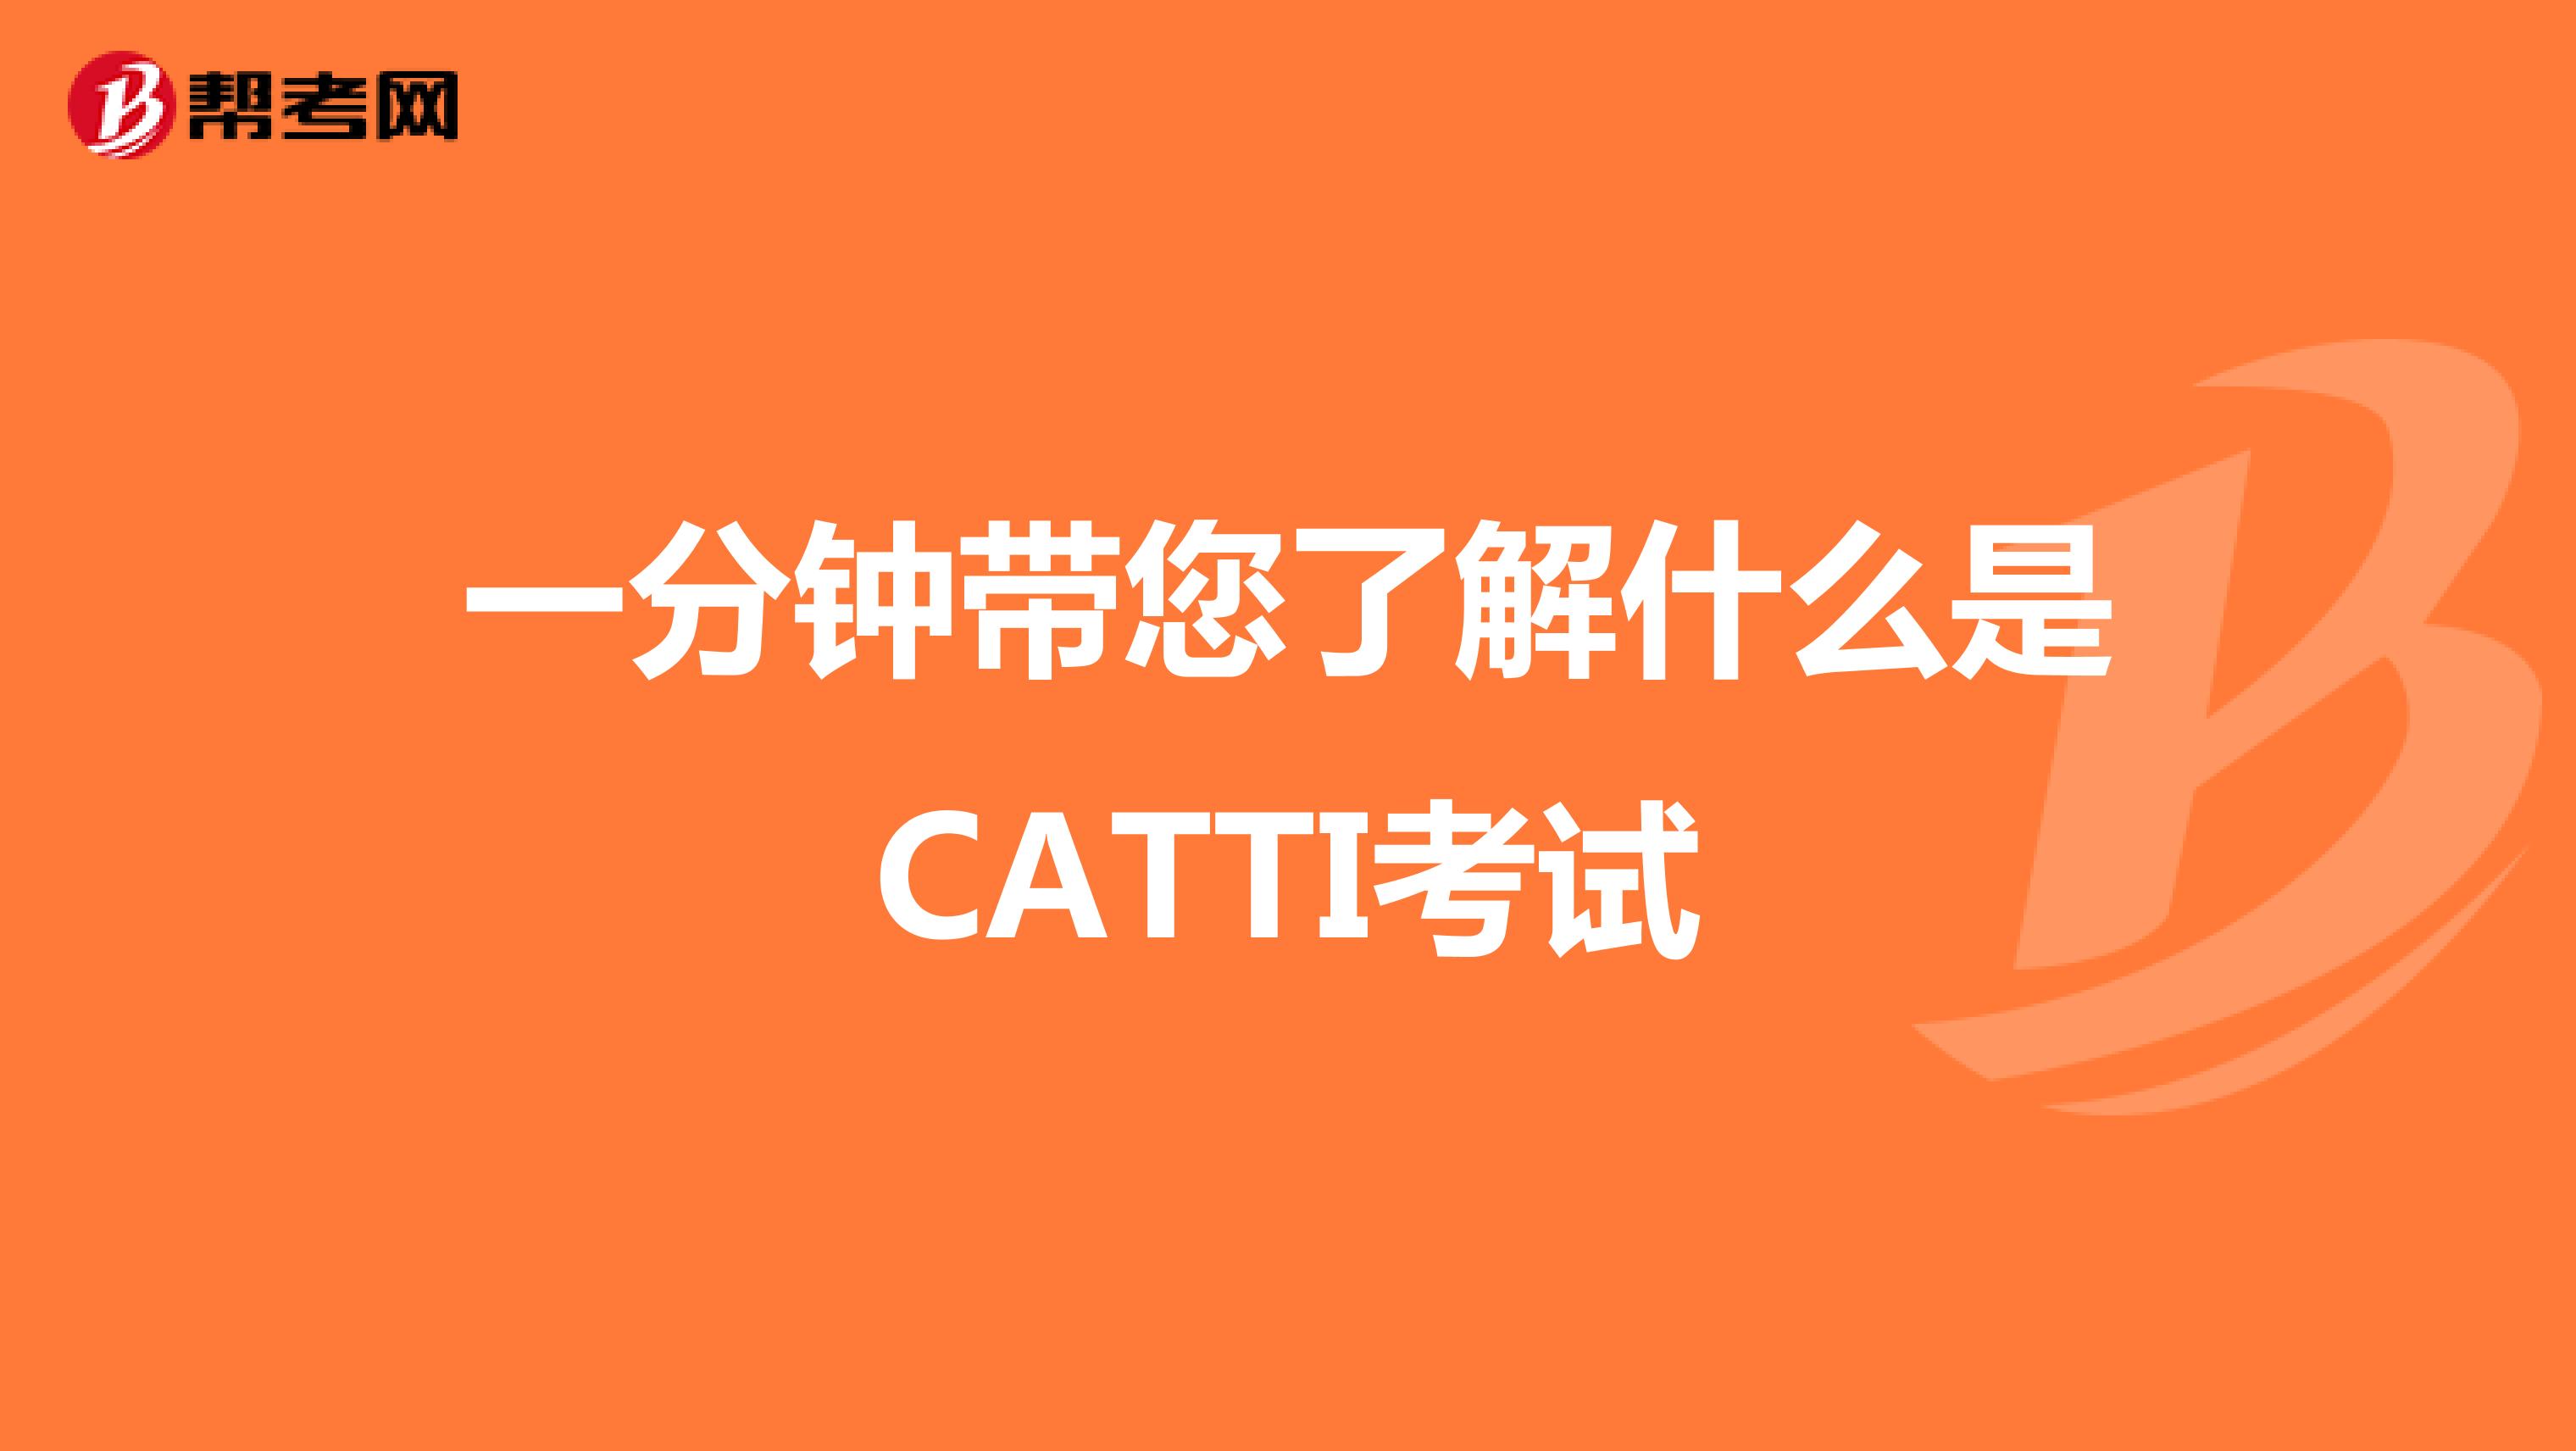 一分钟带您了解什么是CATTI考试